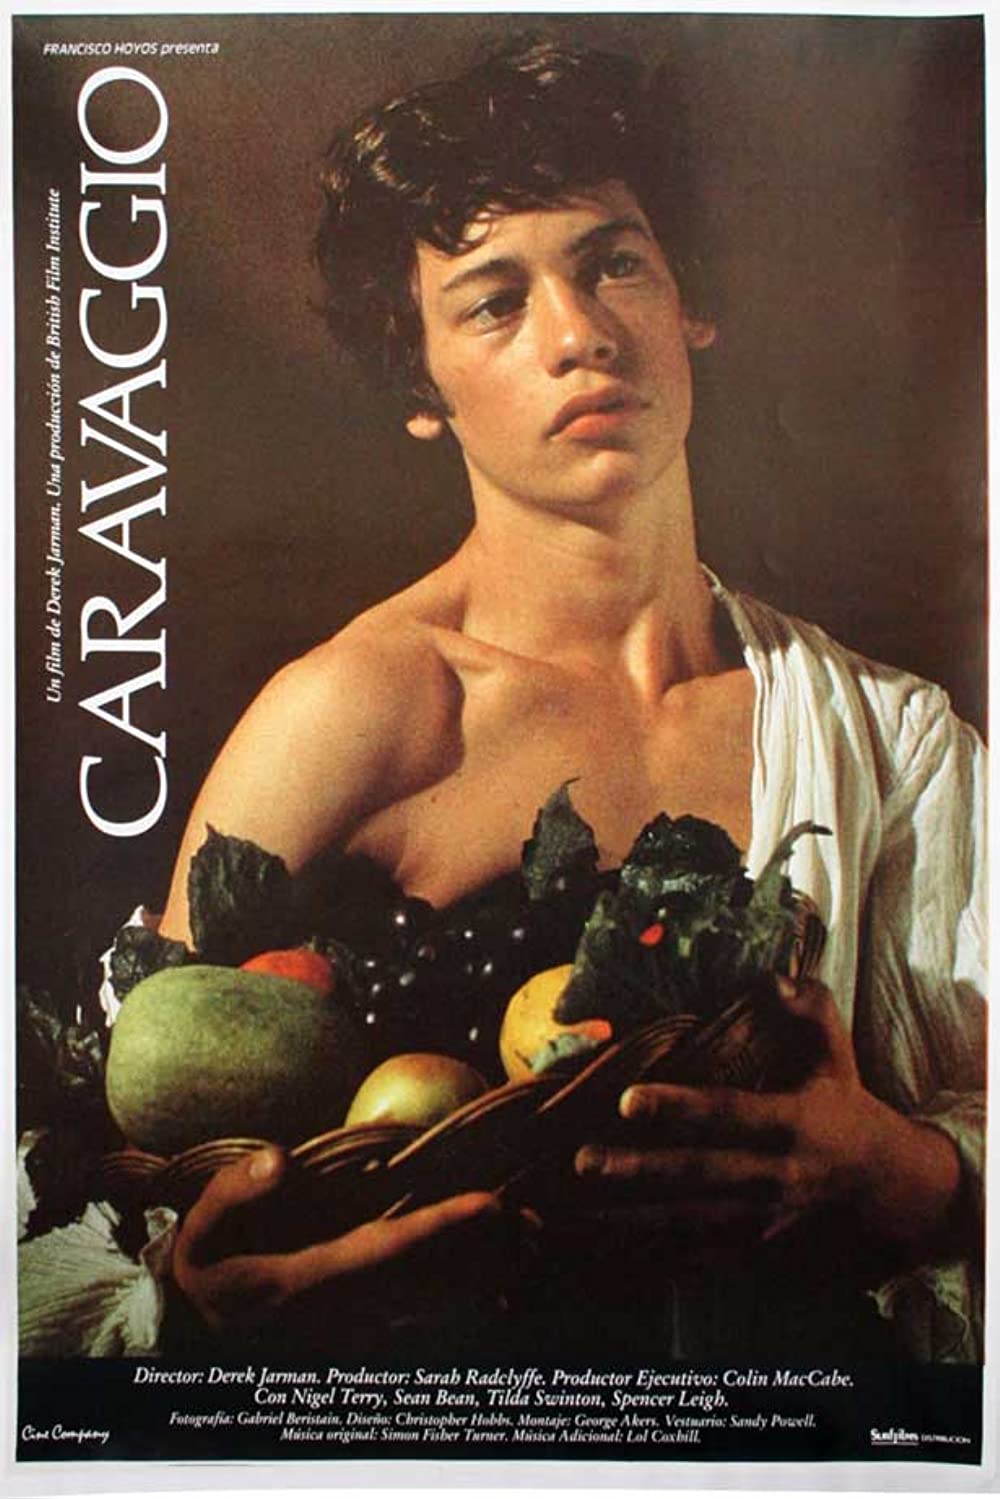 Filmbeschreibung zu Caravaggio (OV)